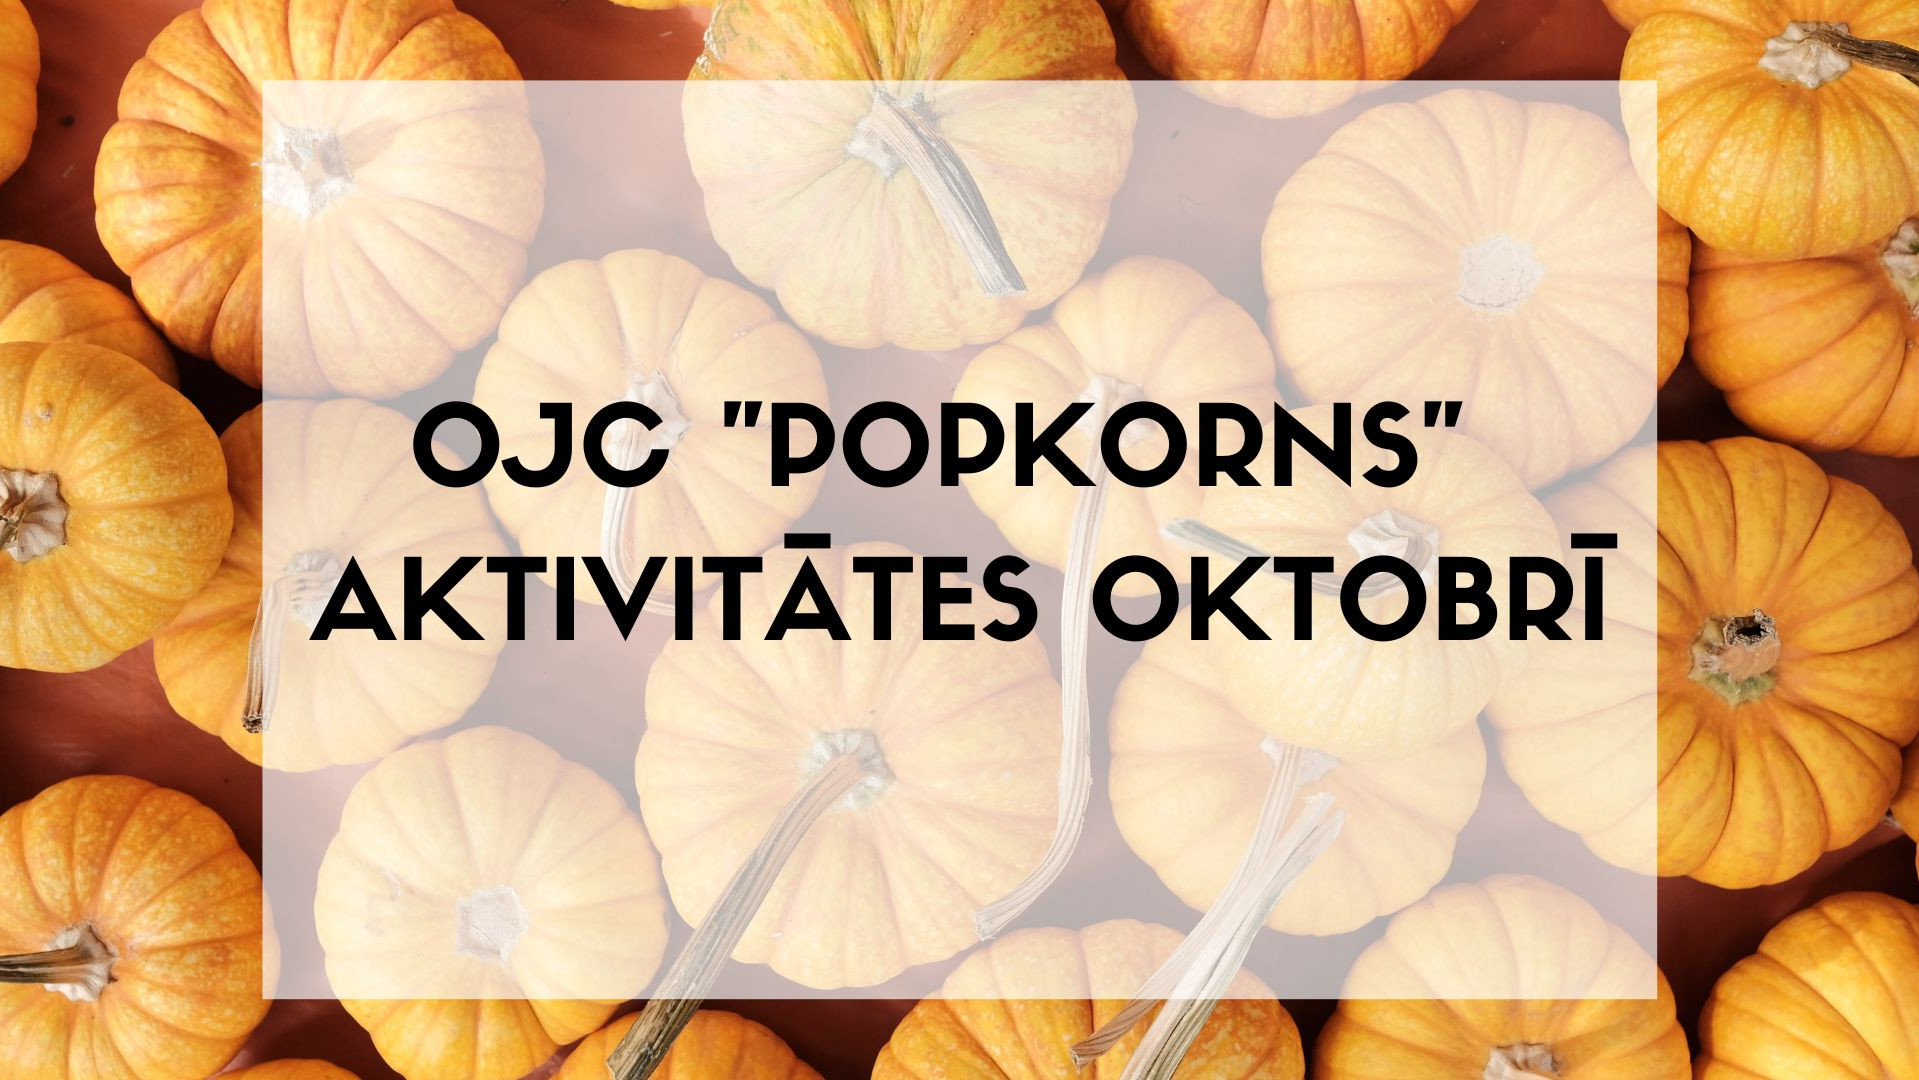 OJC "Popkorns" pasākumi oktobrī